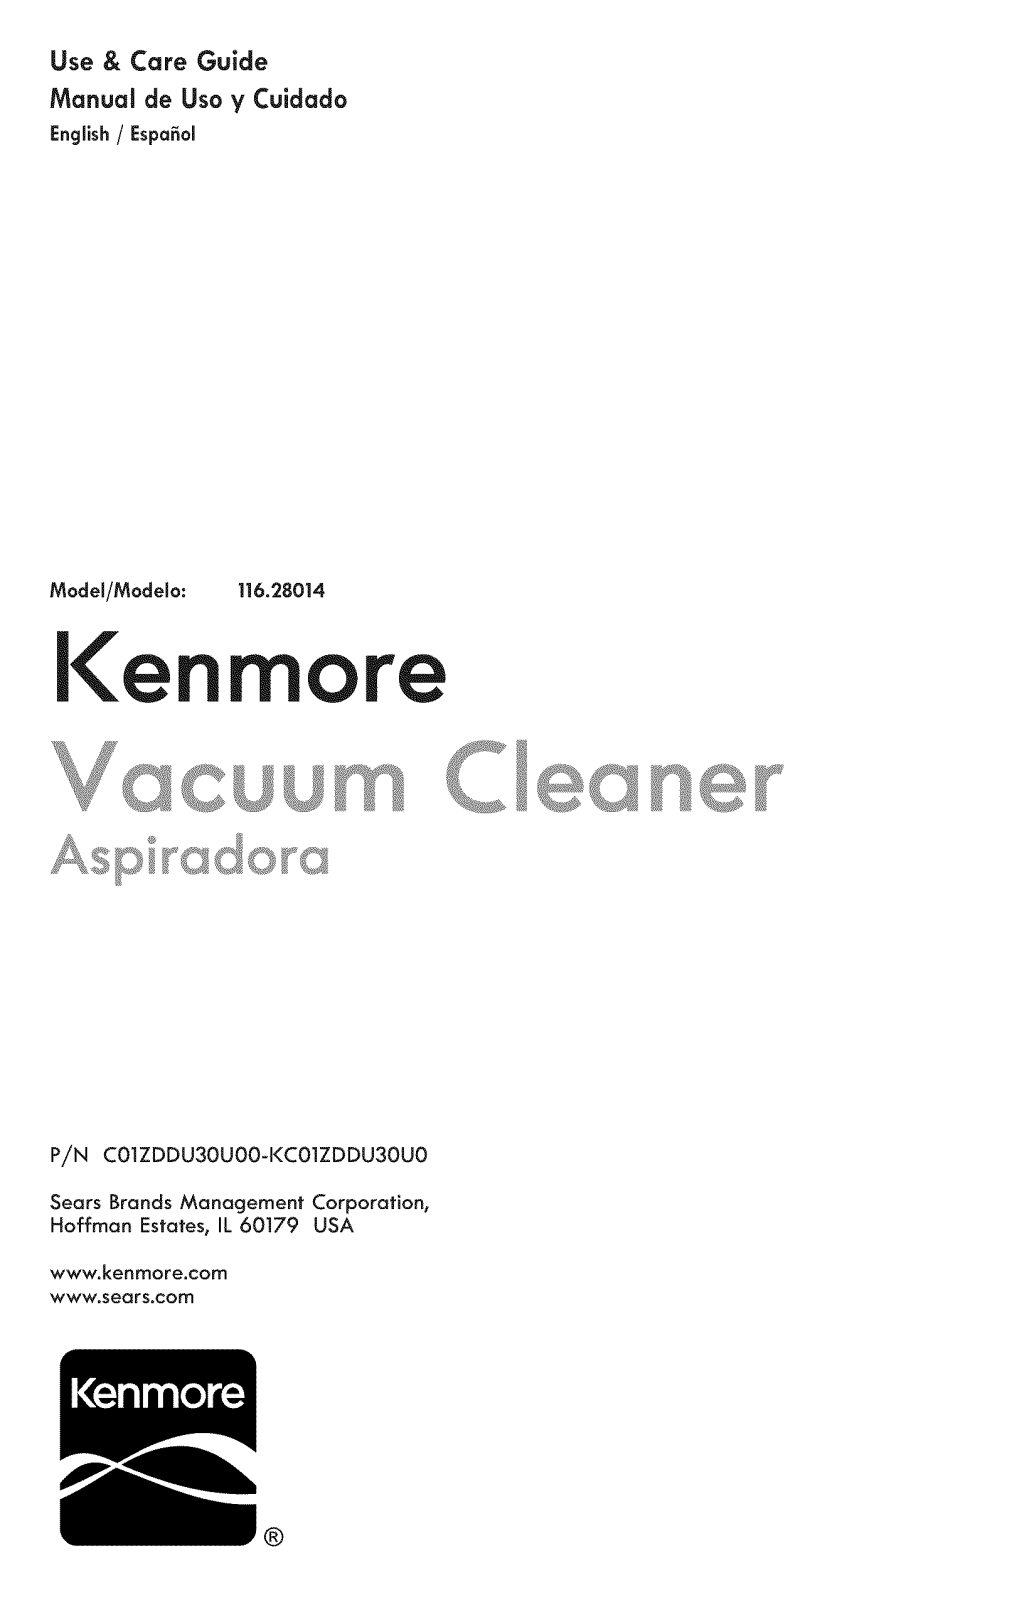 Kenmore 11658014700, 11628014700 Owner’s Manual